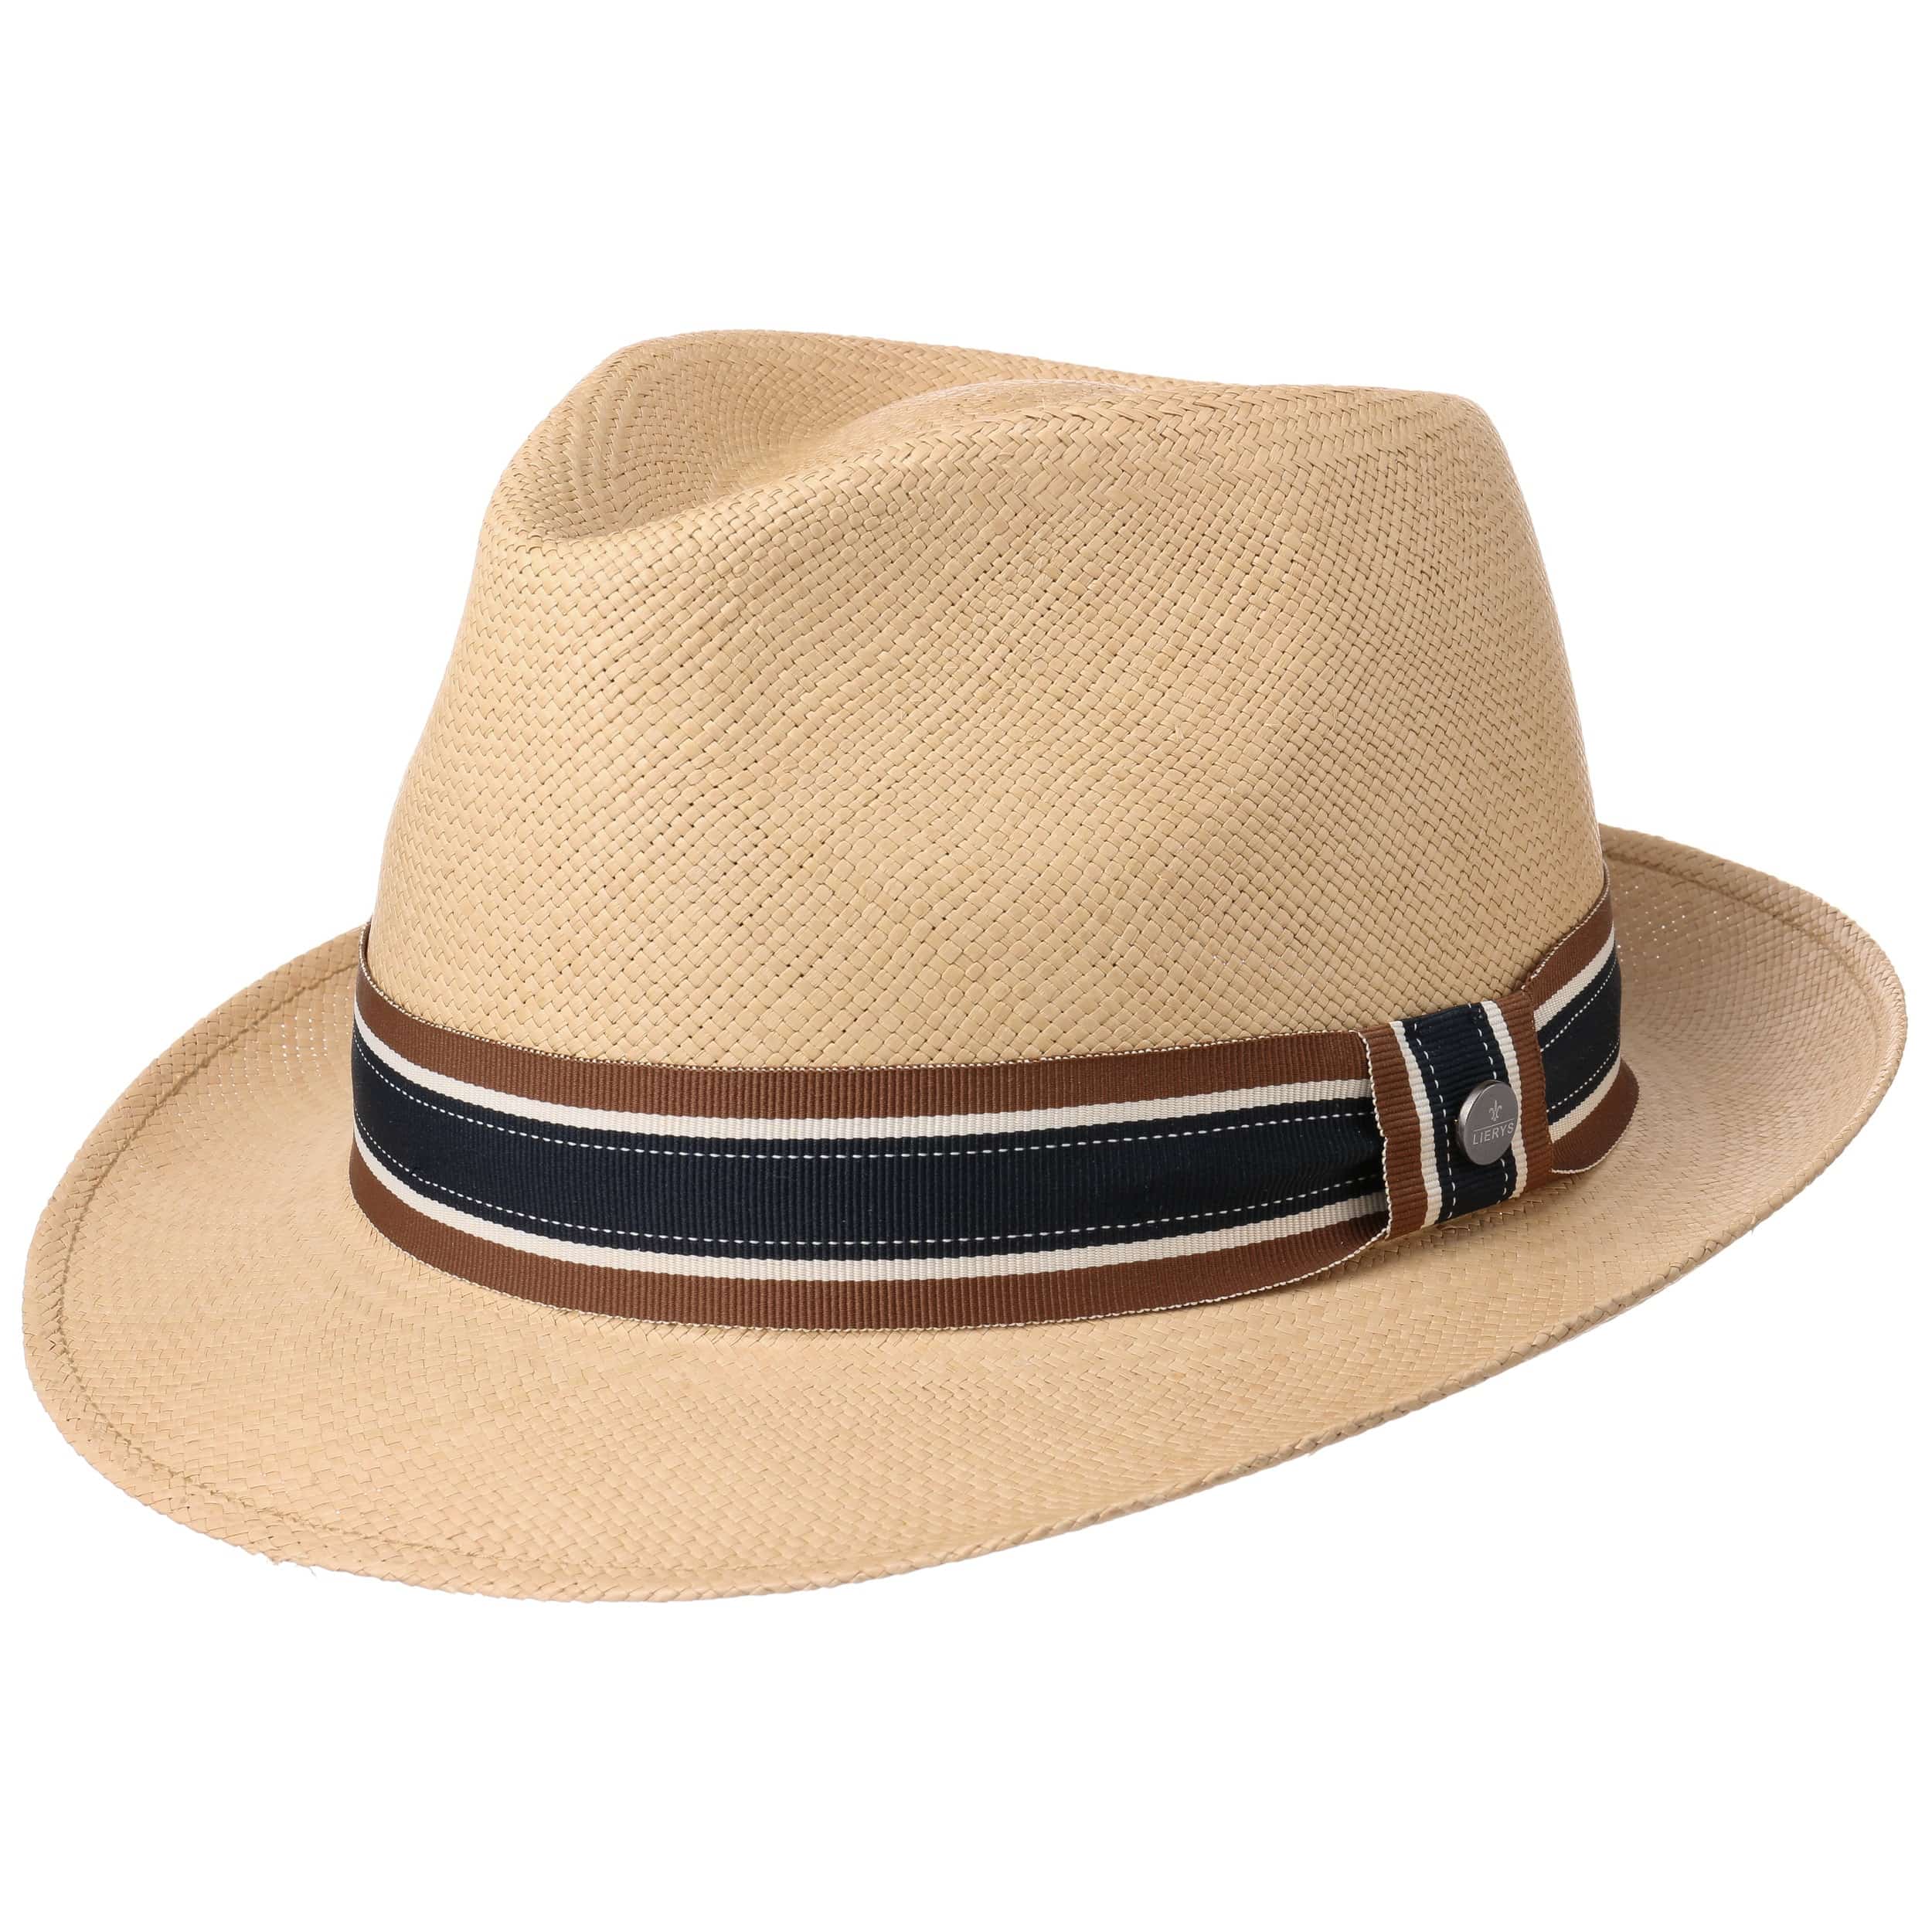 hochwertiger PANAMAHUT Hut handgefertigt aus 100% PANAMA-Stroh weiß 